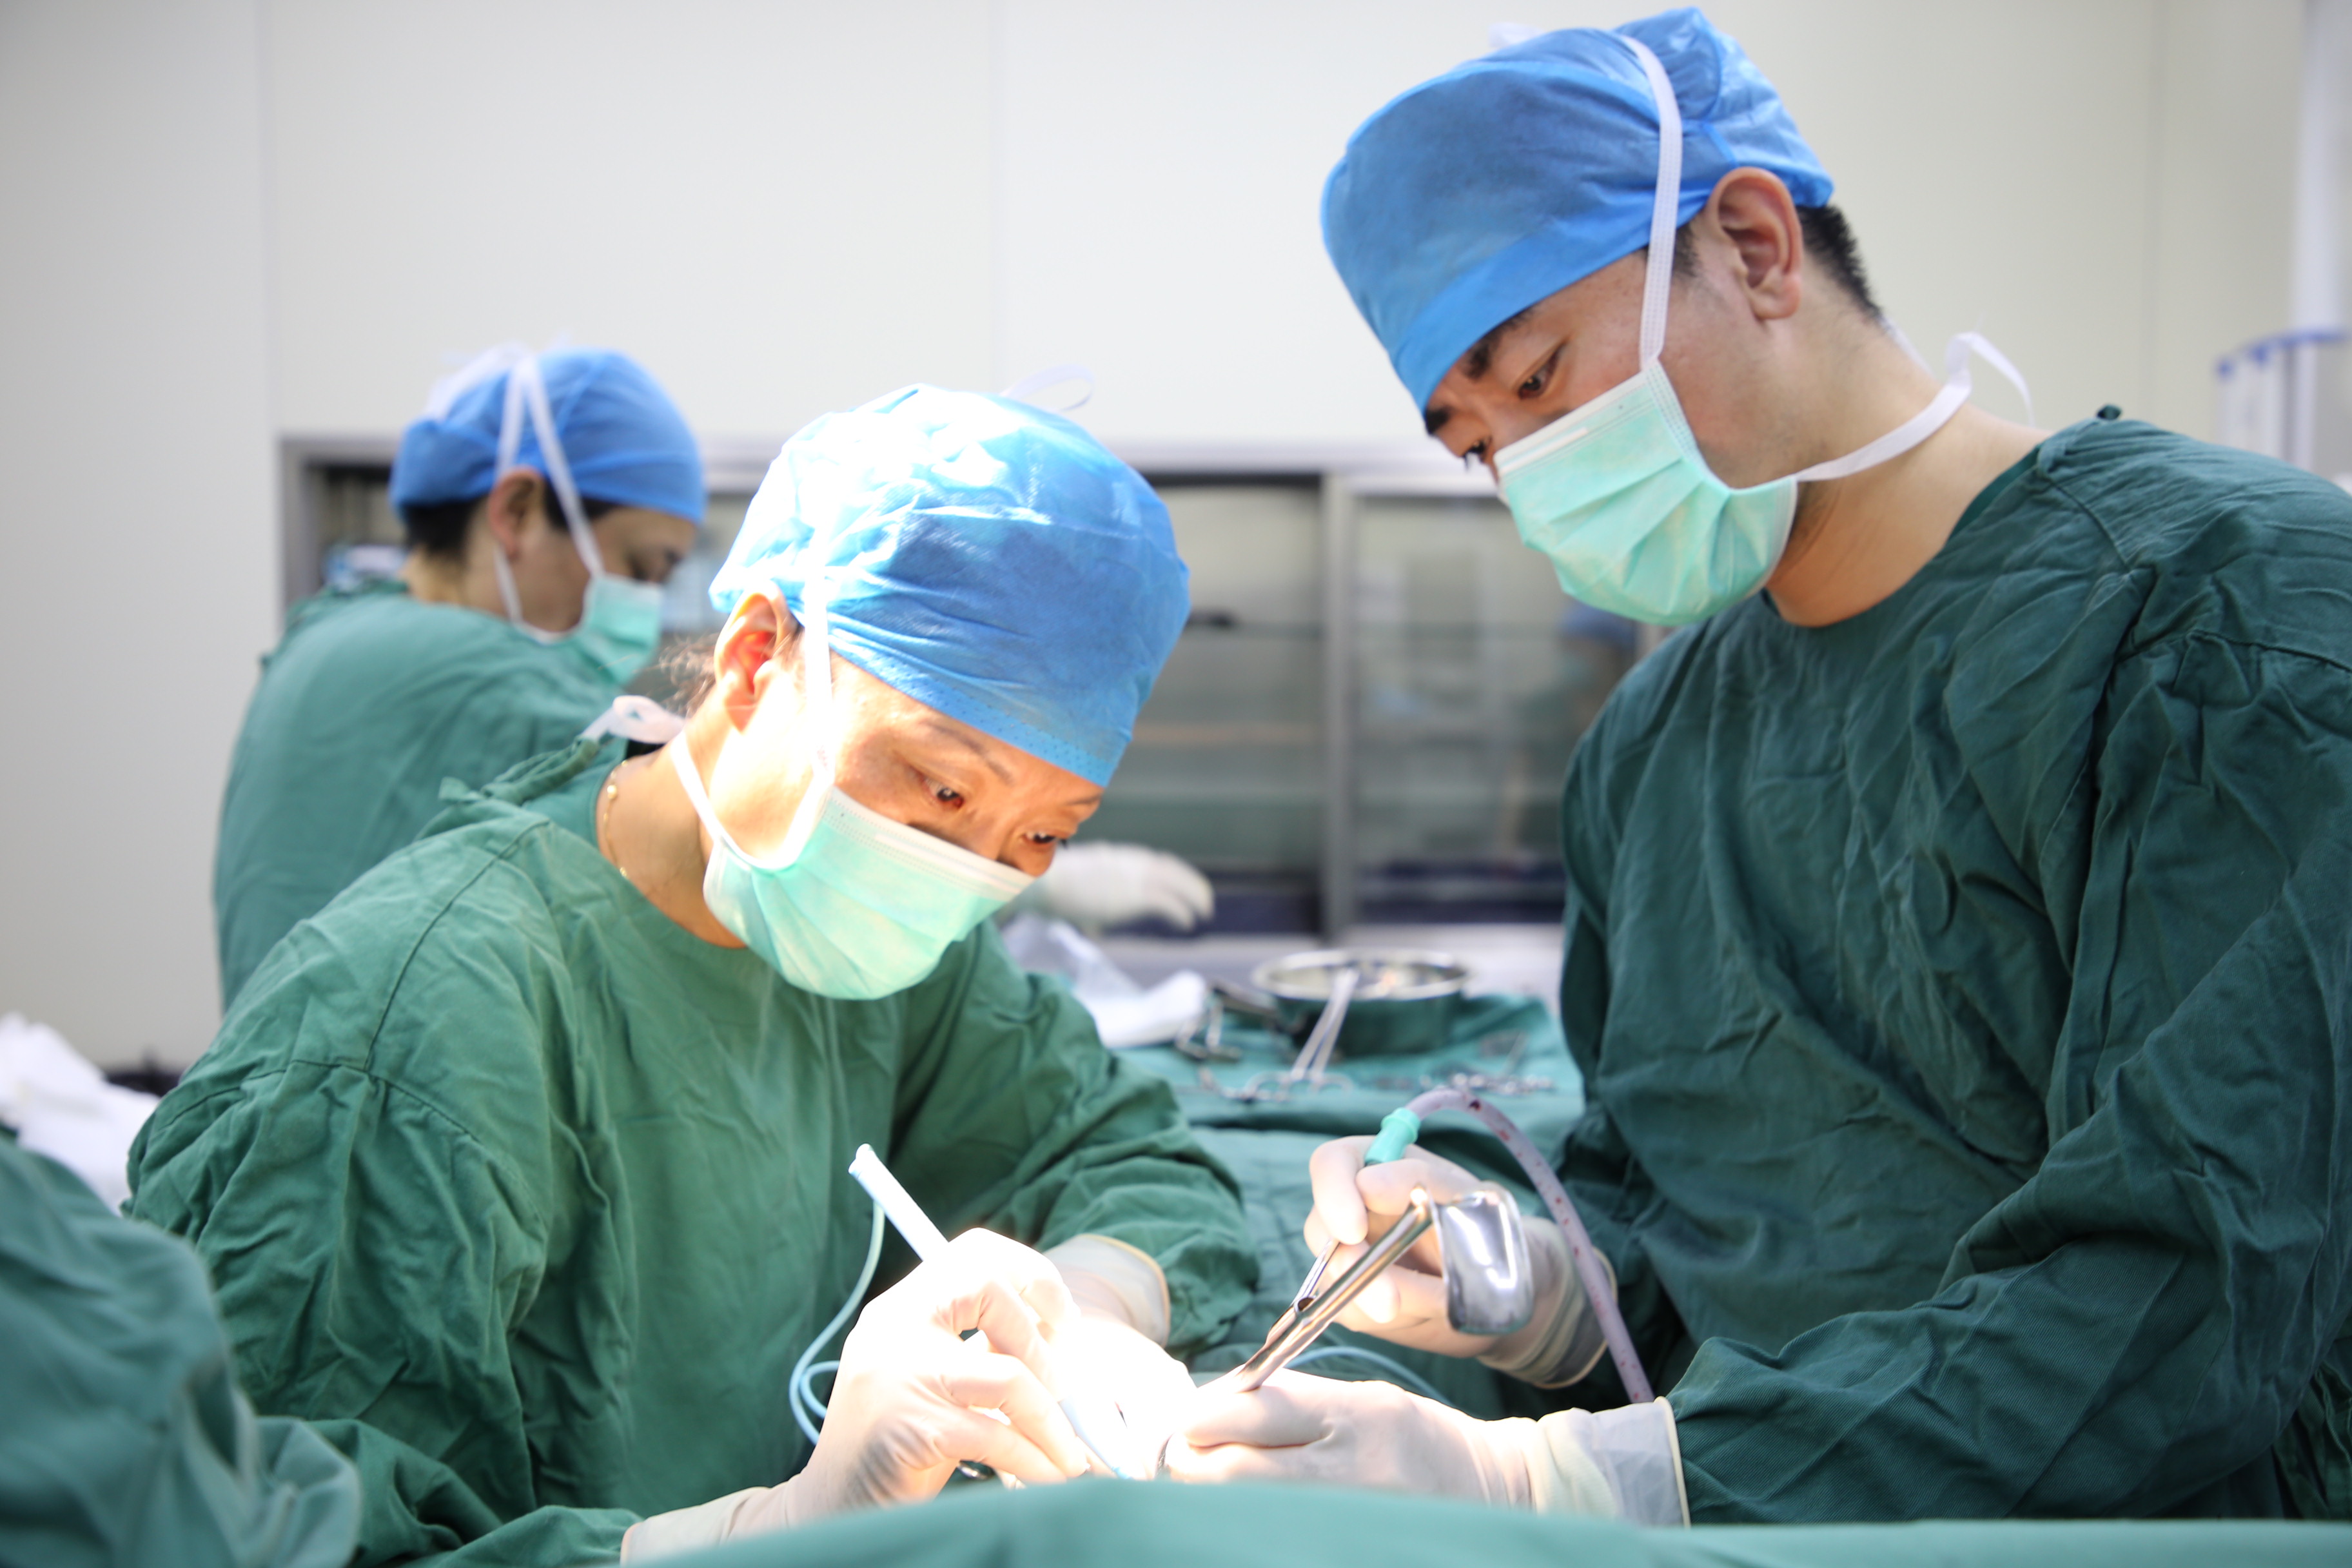 附属仁济医院乳腺外科首次实施腔镜下乳房重建术-上海交通大学医学院-新闻网